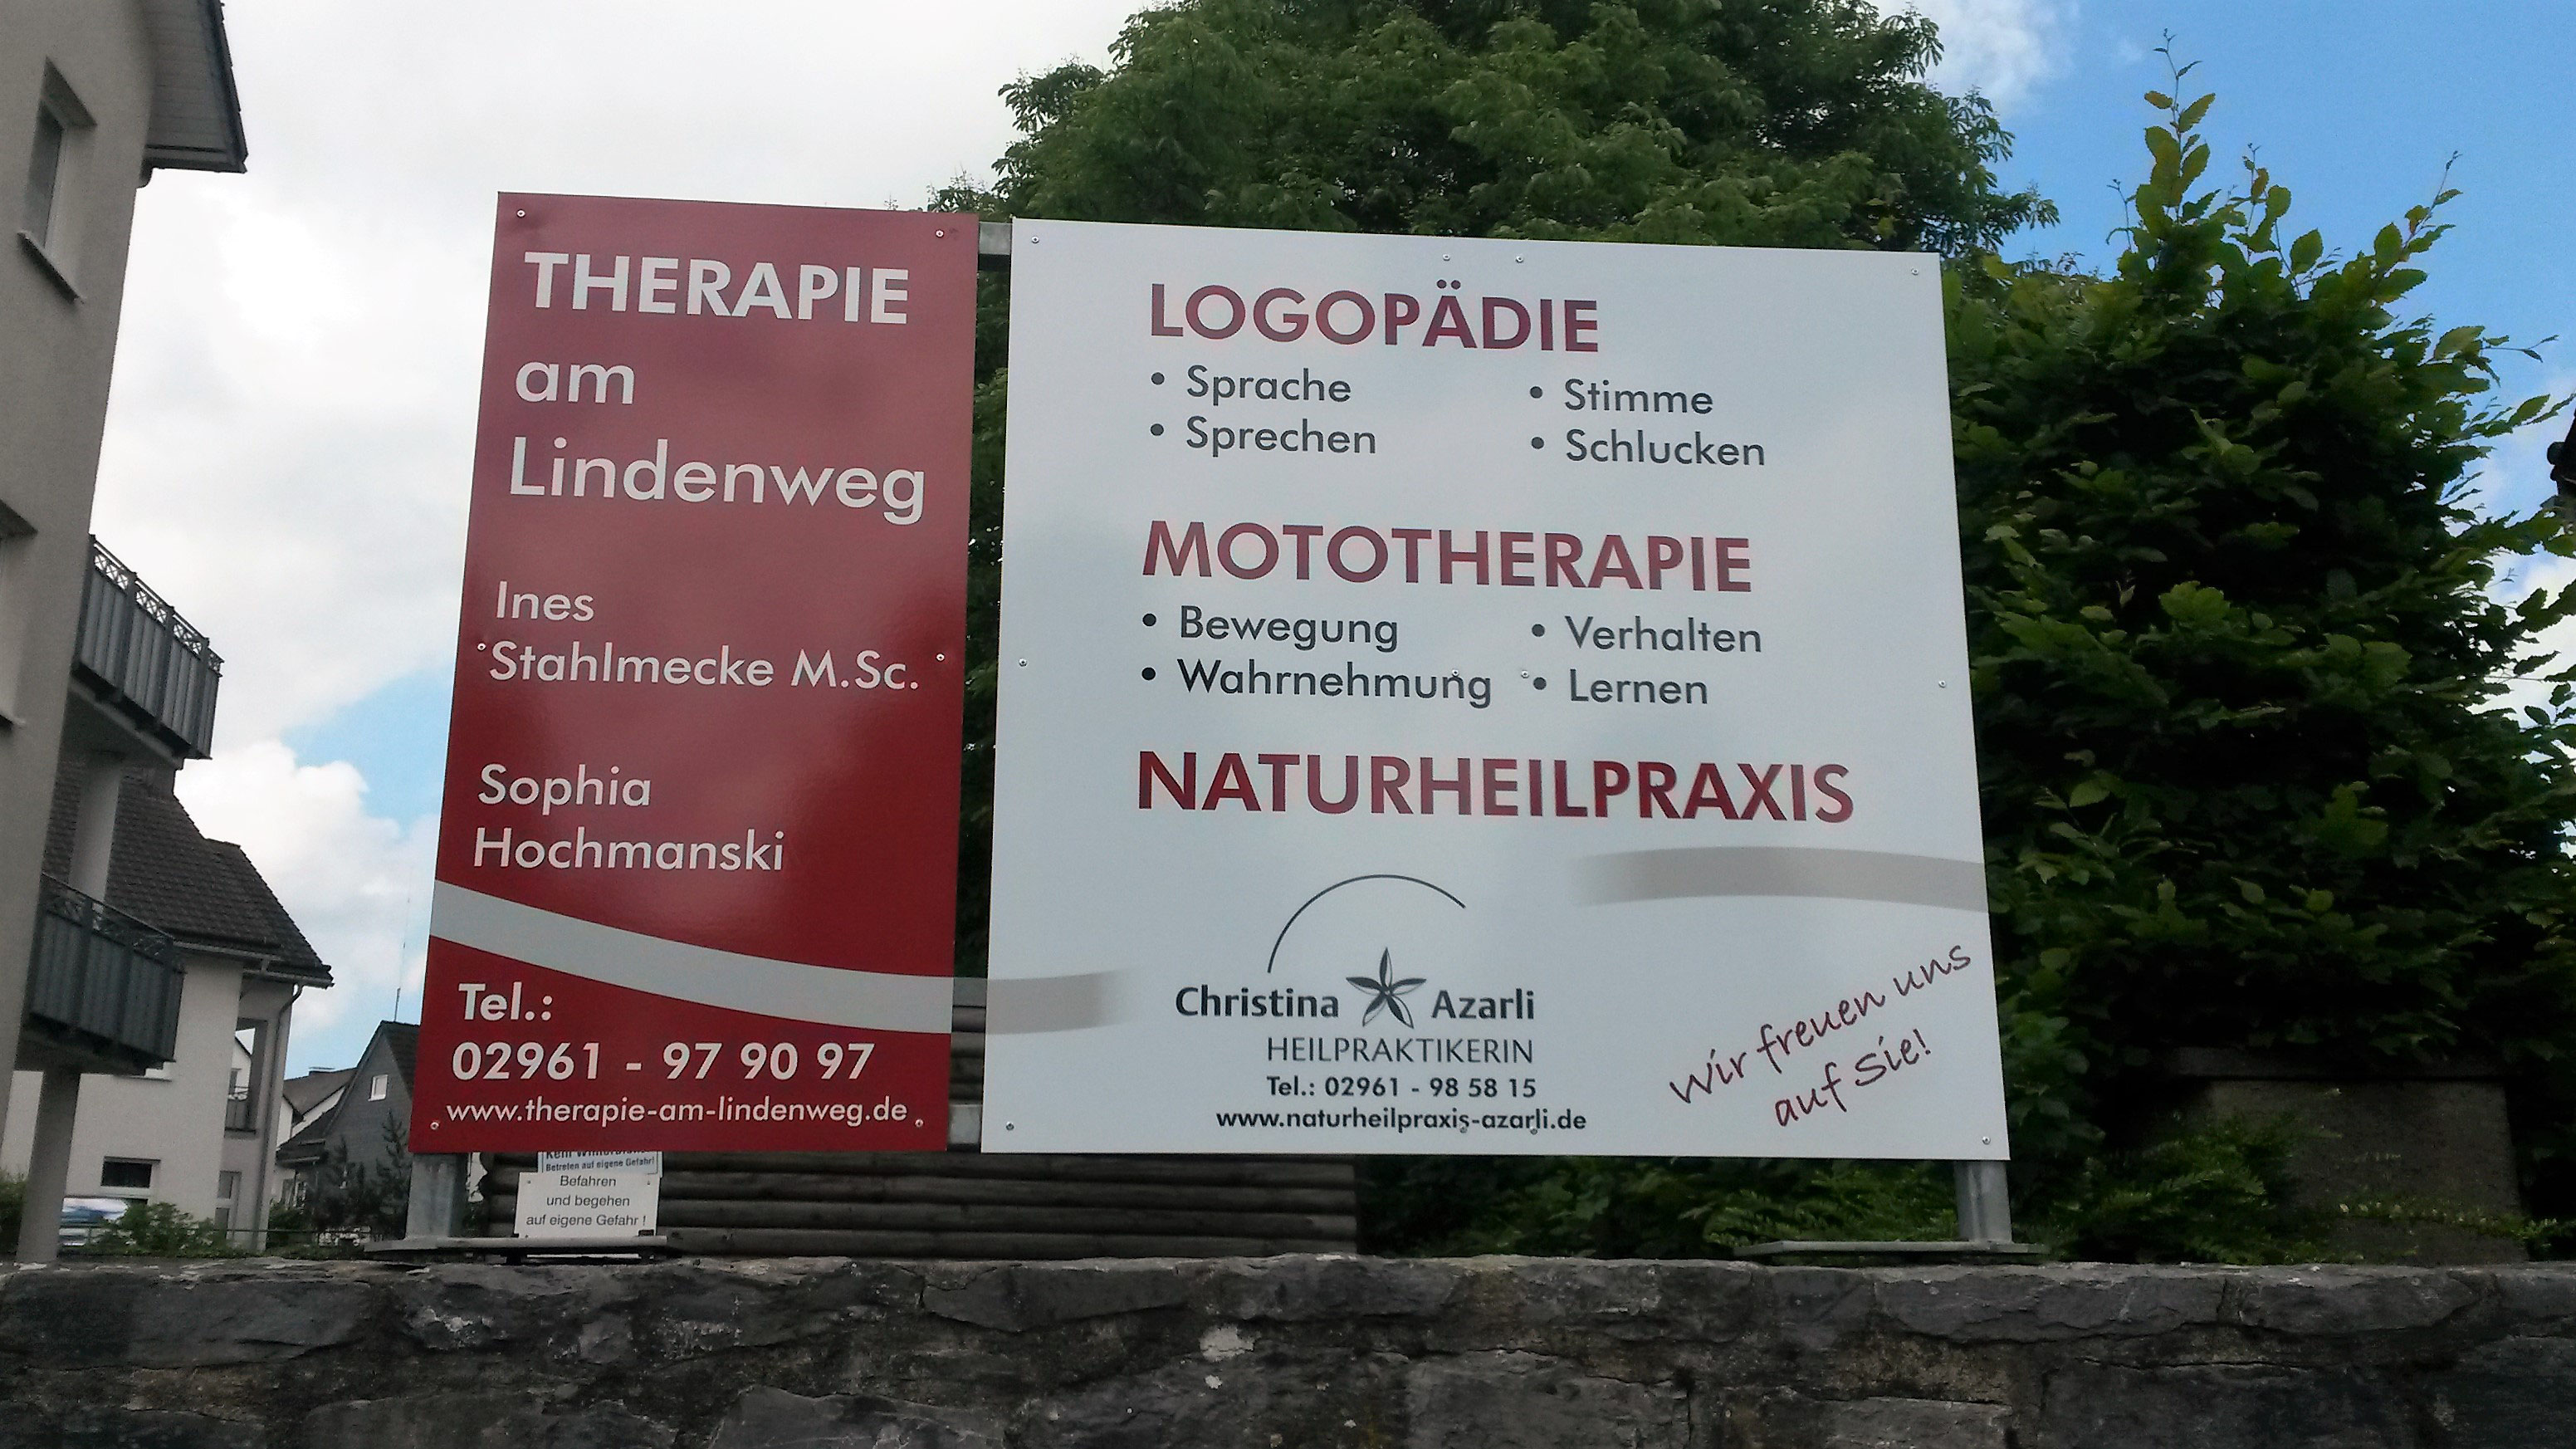 (c) Therapie-am-lindenweg.de